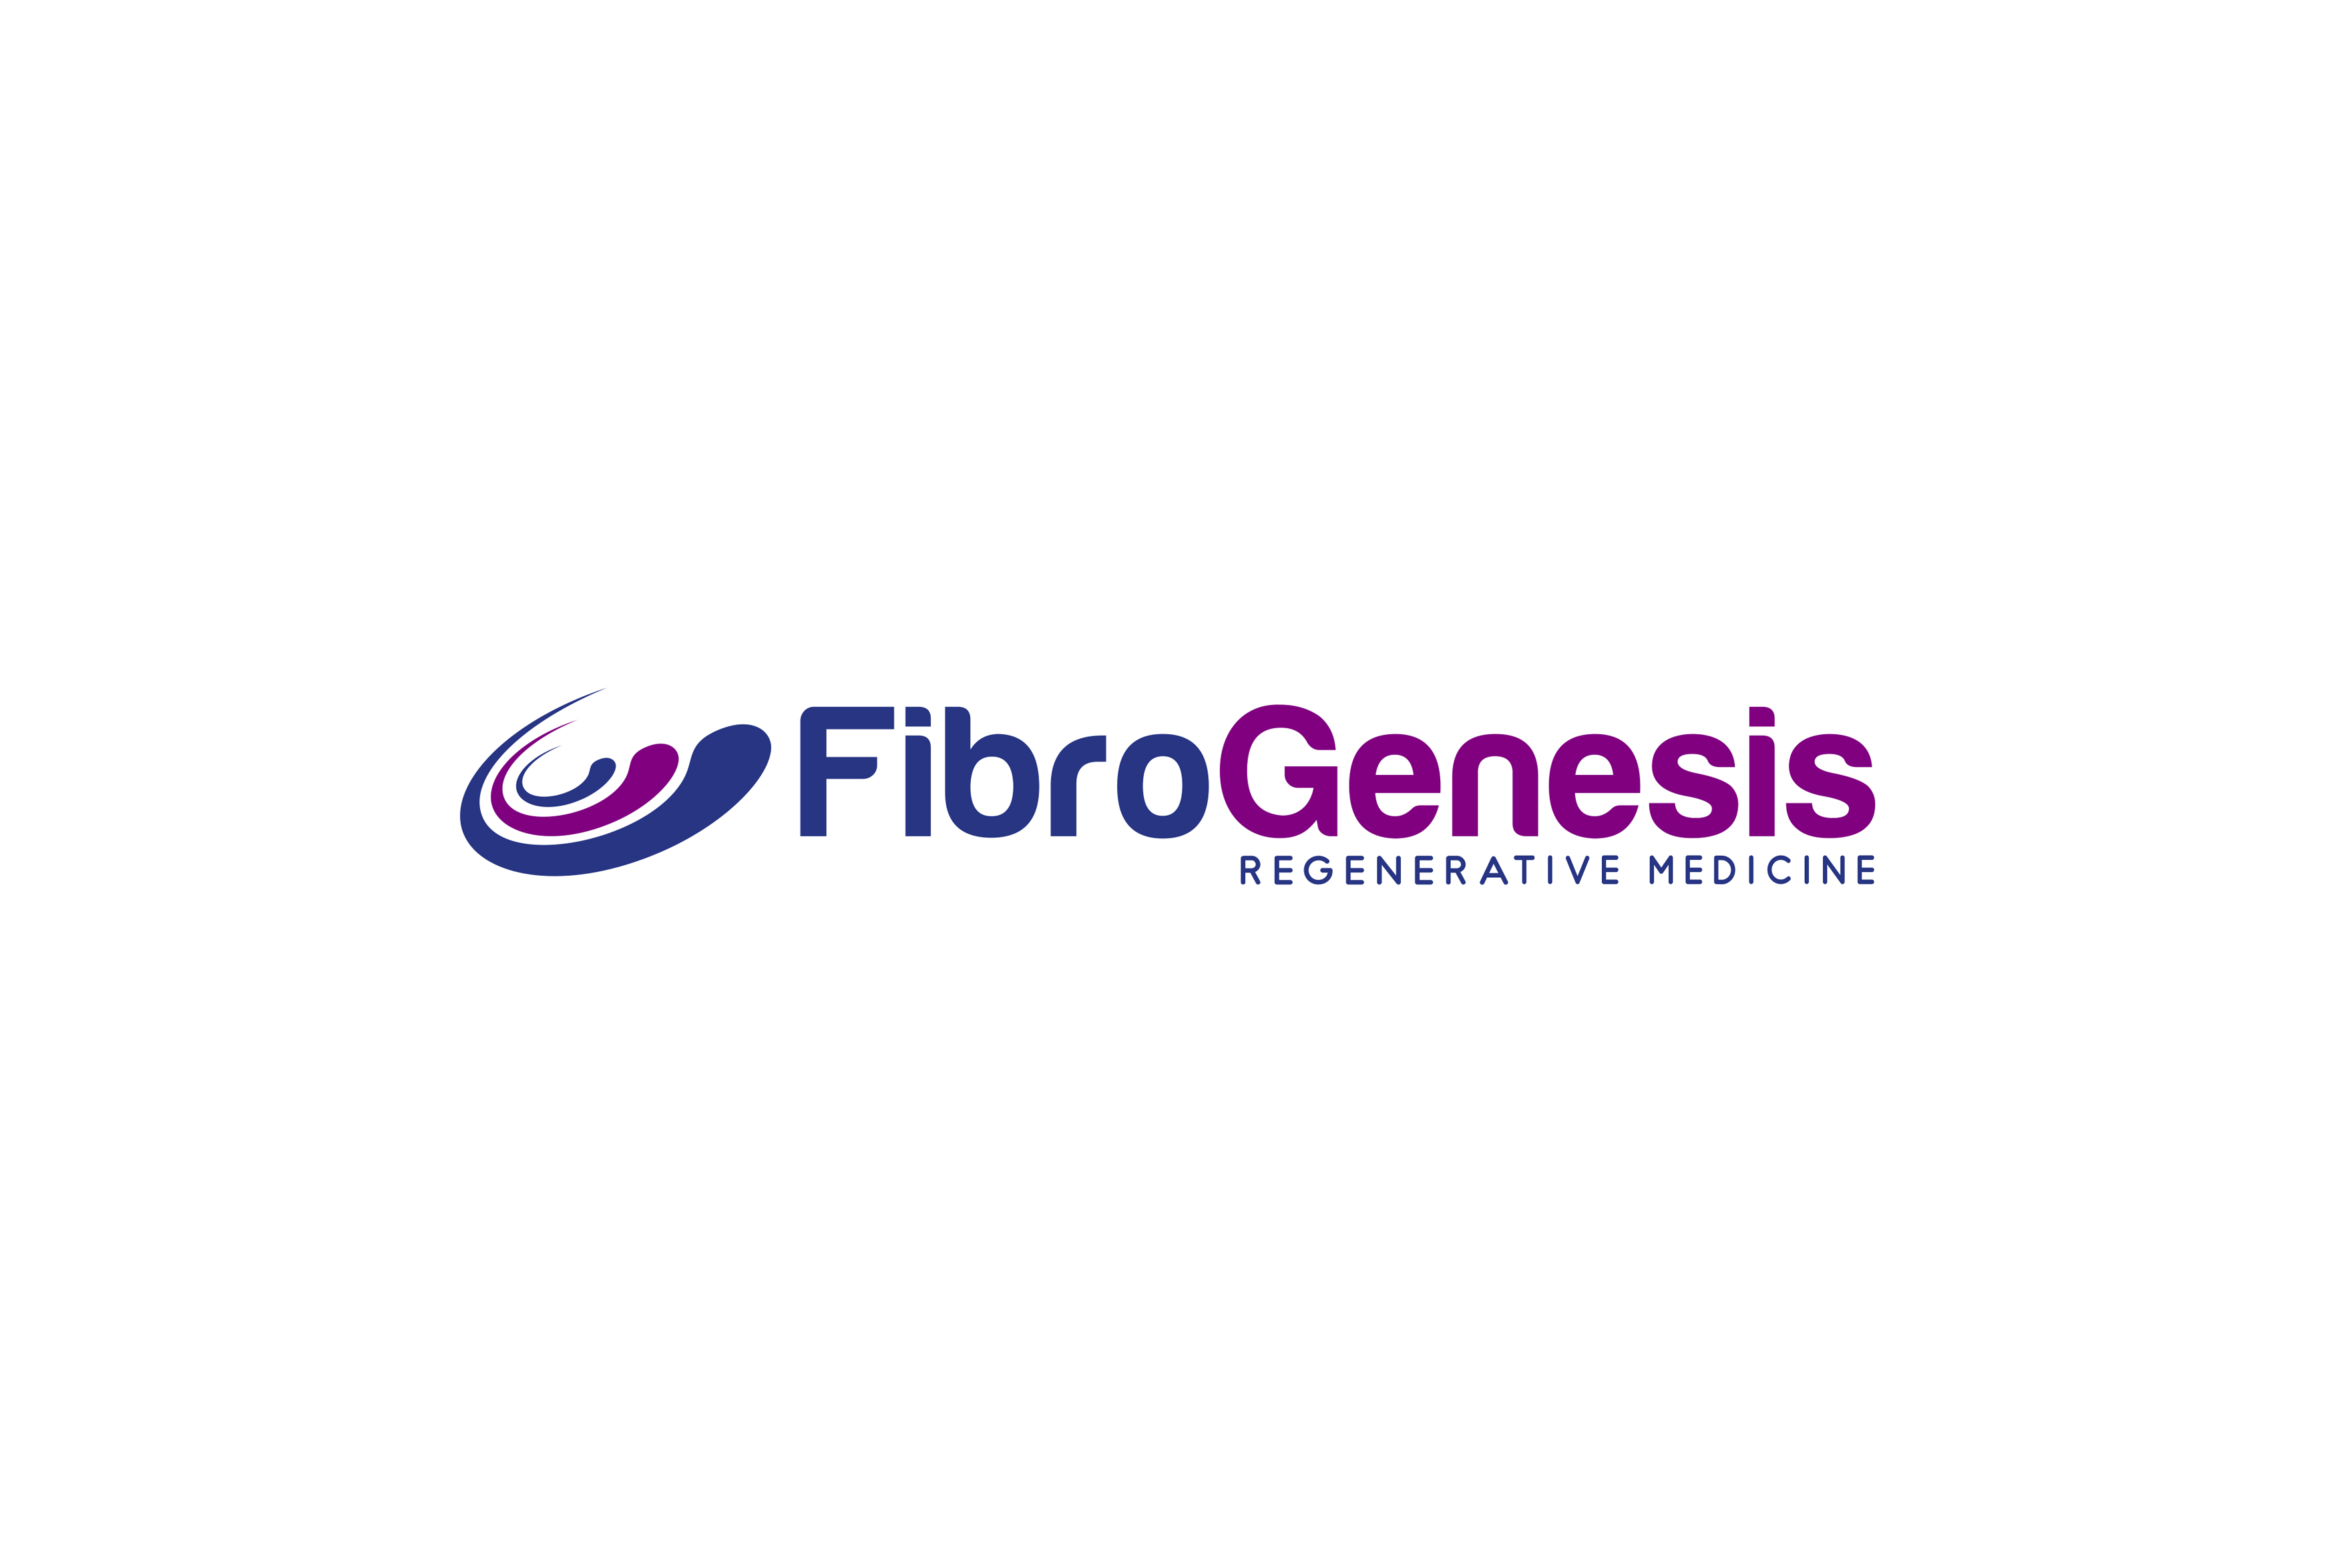 FibroGenesis